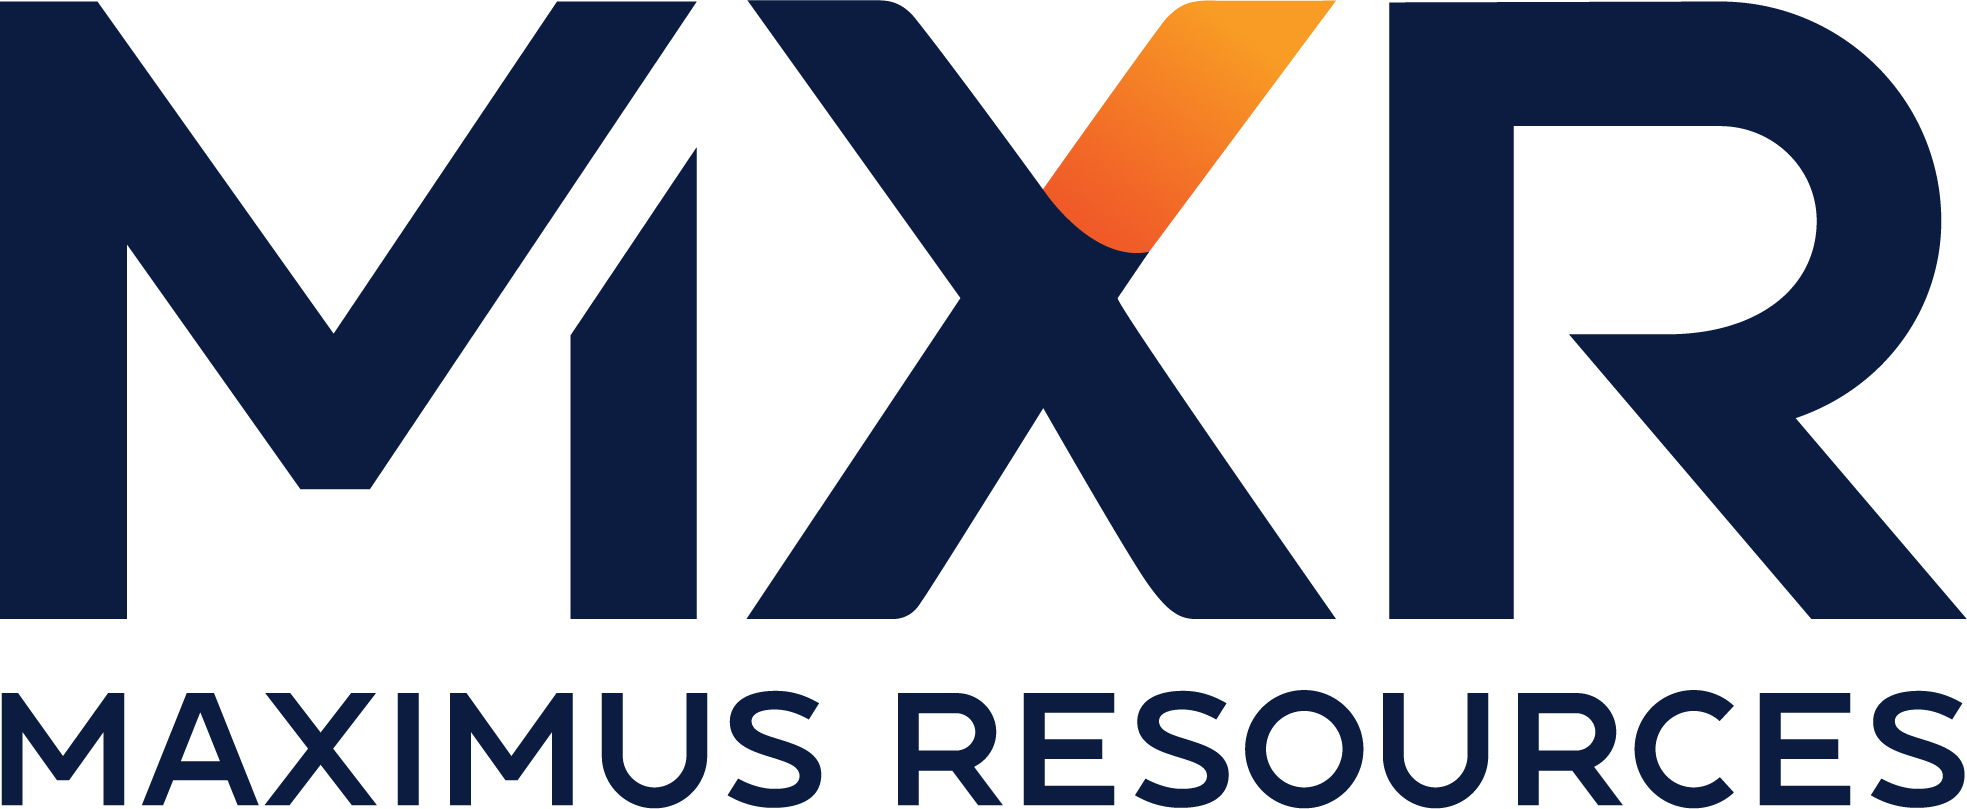 Maximus Resources – MXR